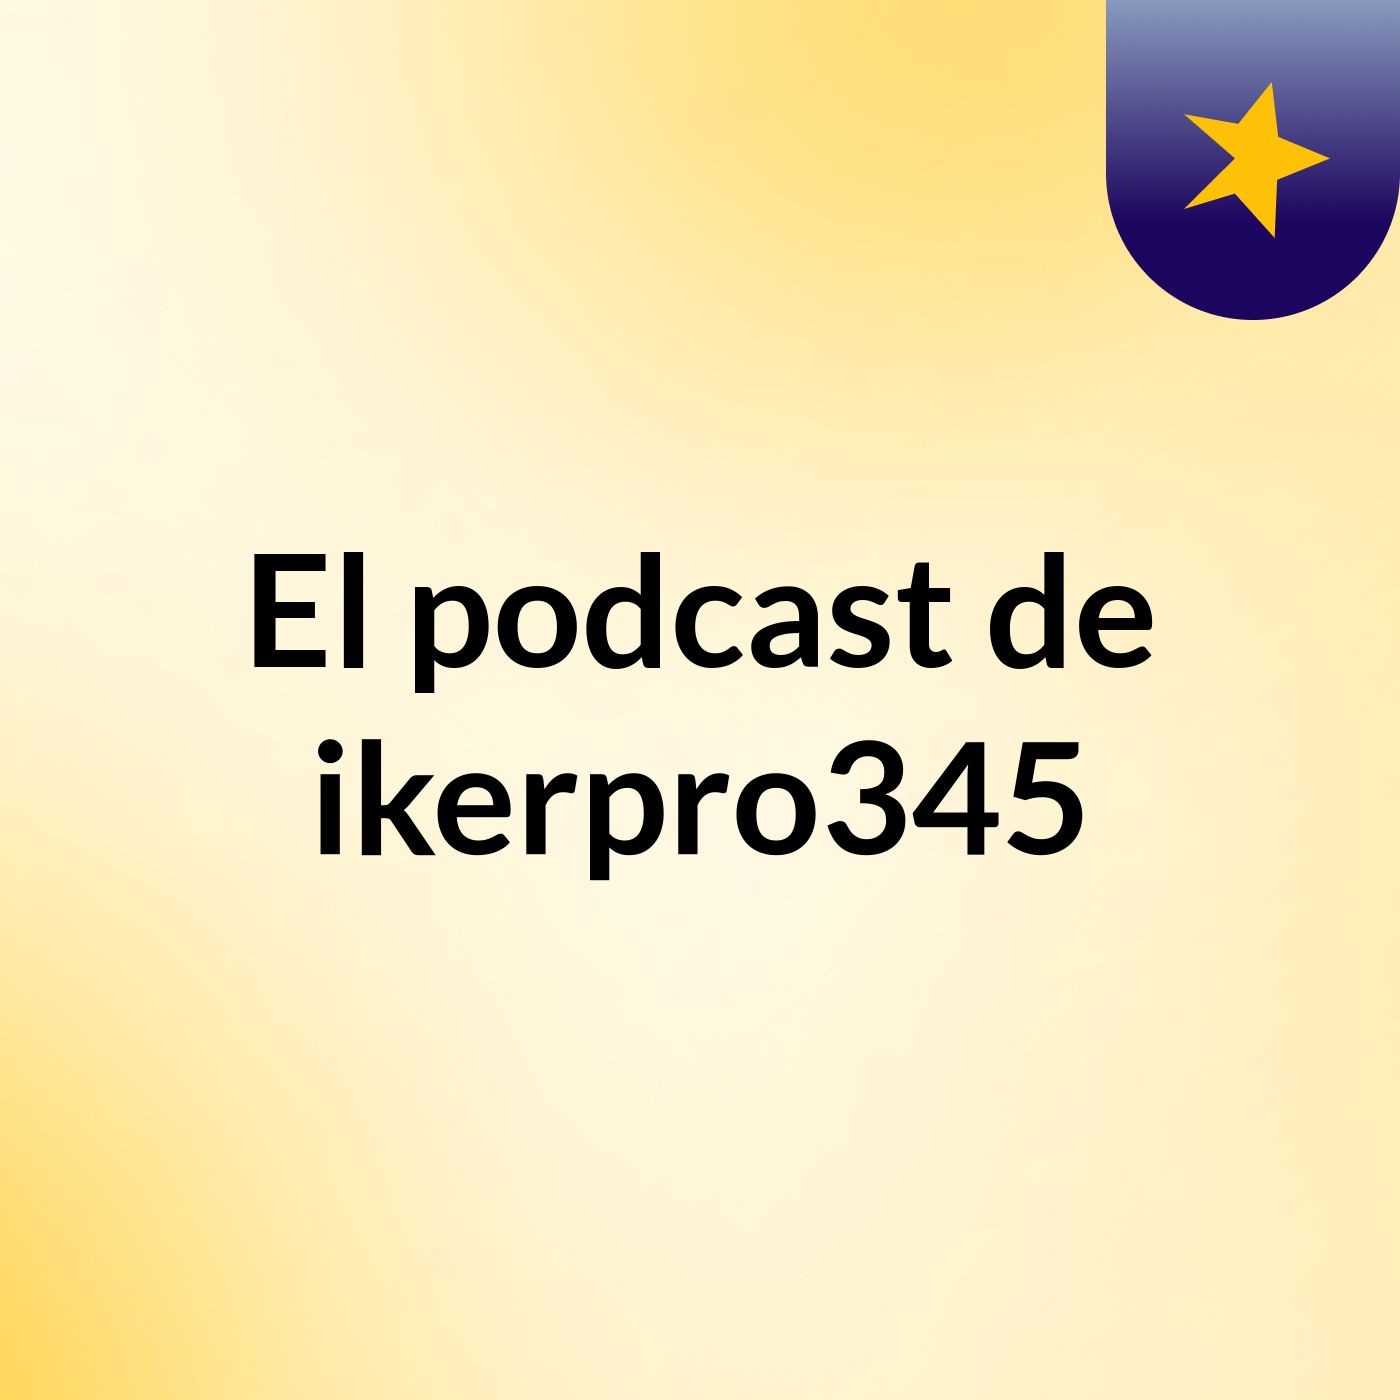 Episodio 2 - El podcast de ikerpro345